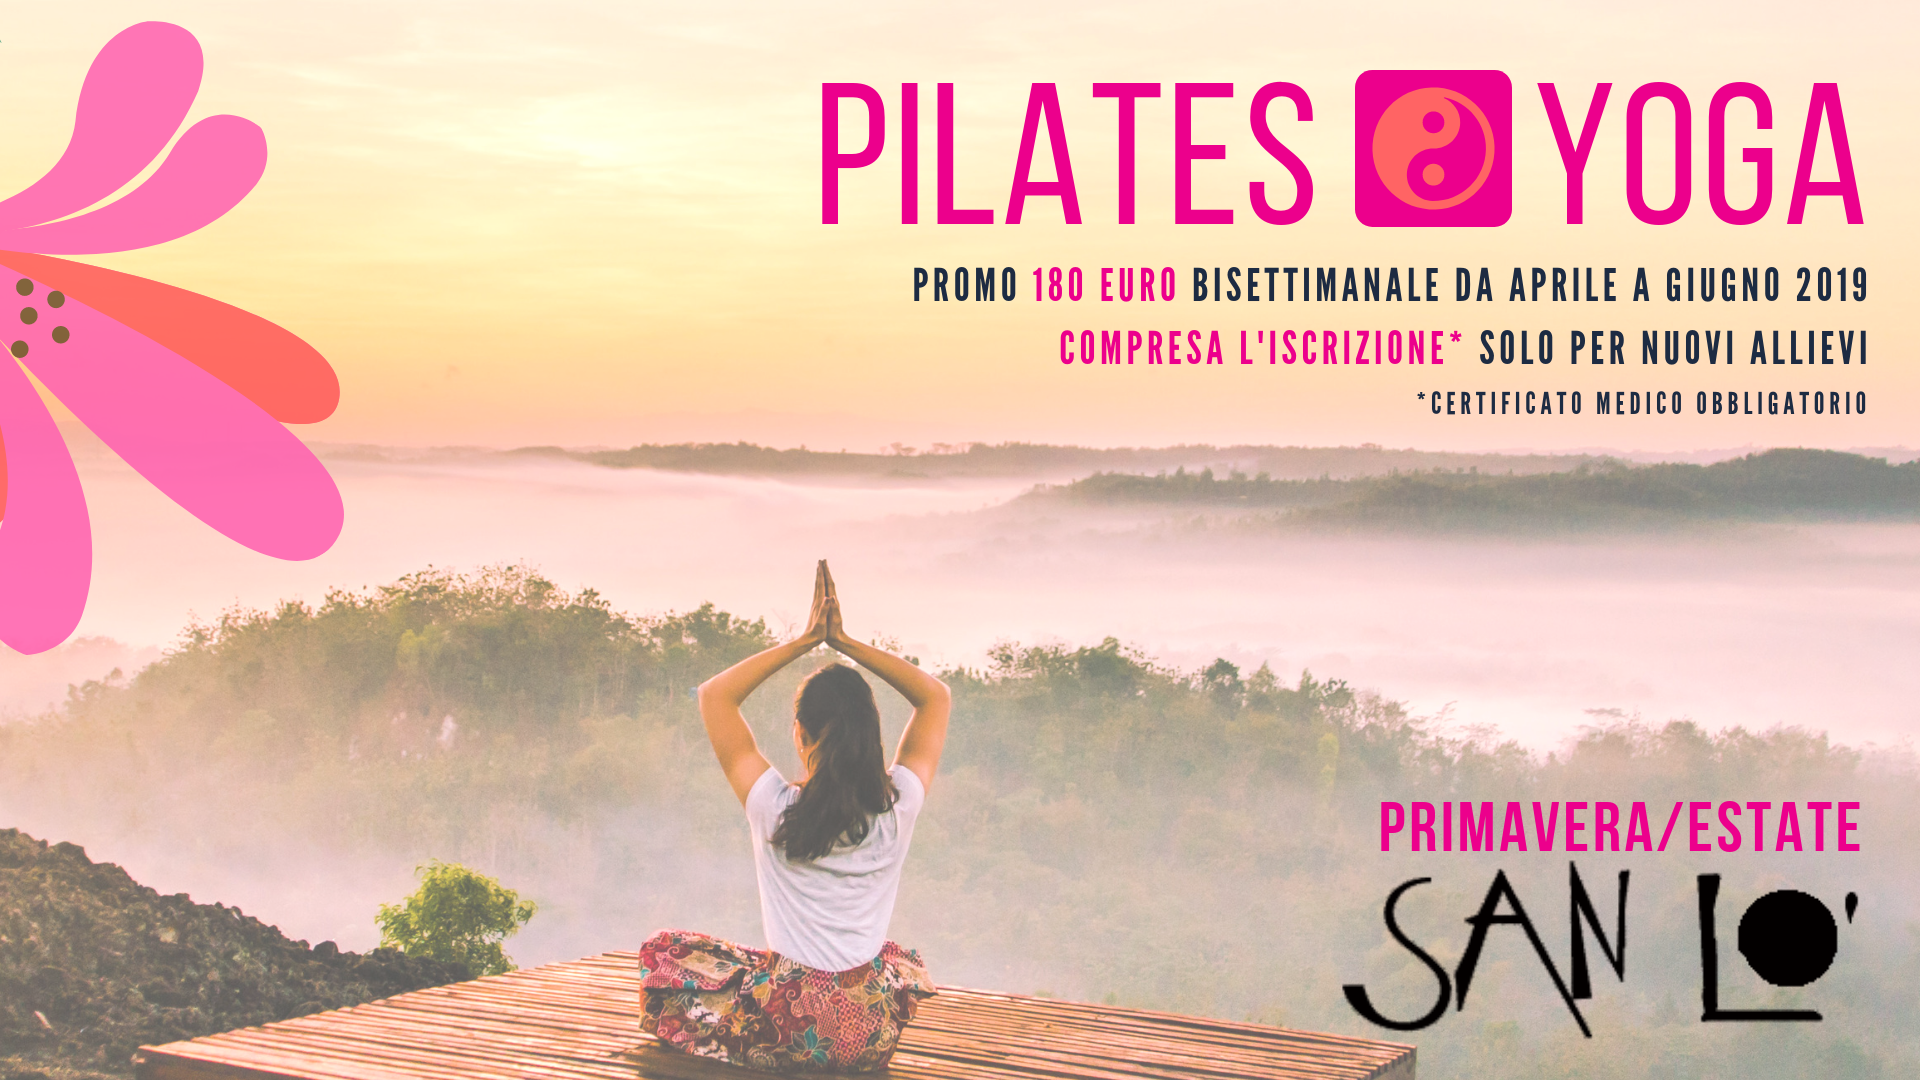 Pilates & Yoga in Primavera/Estate